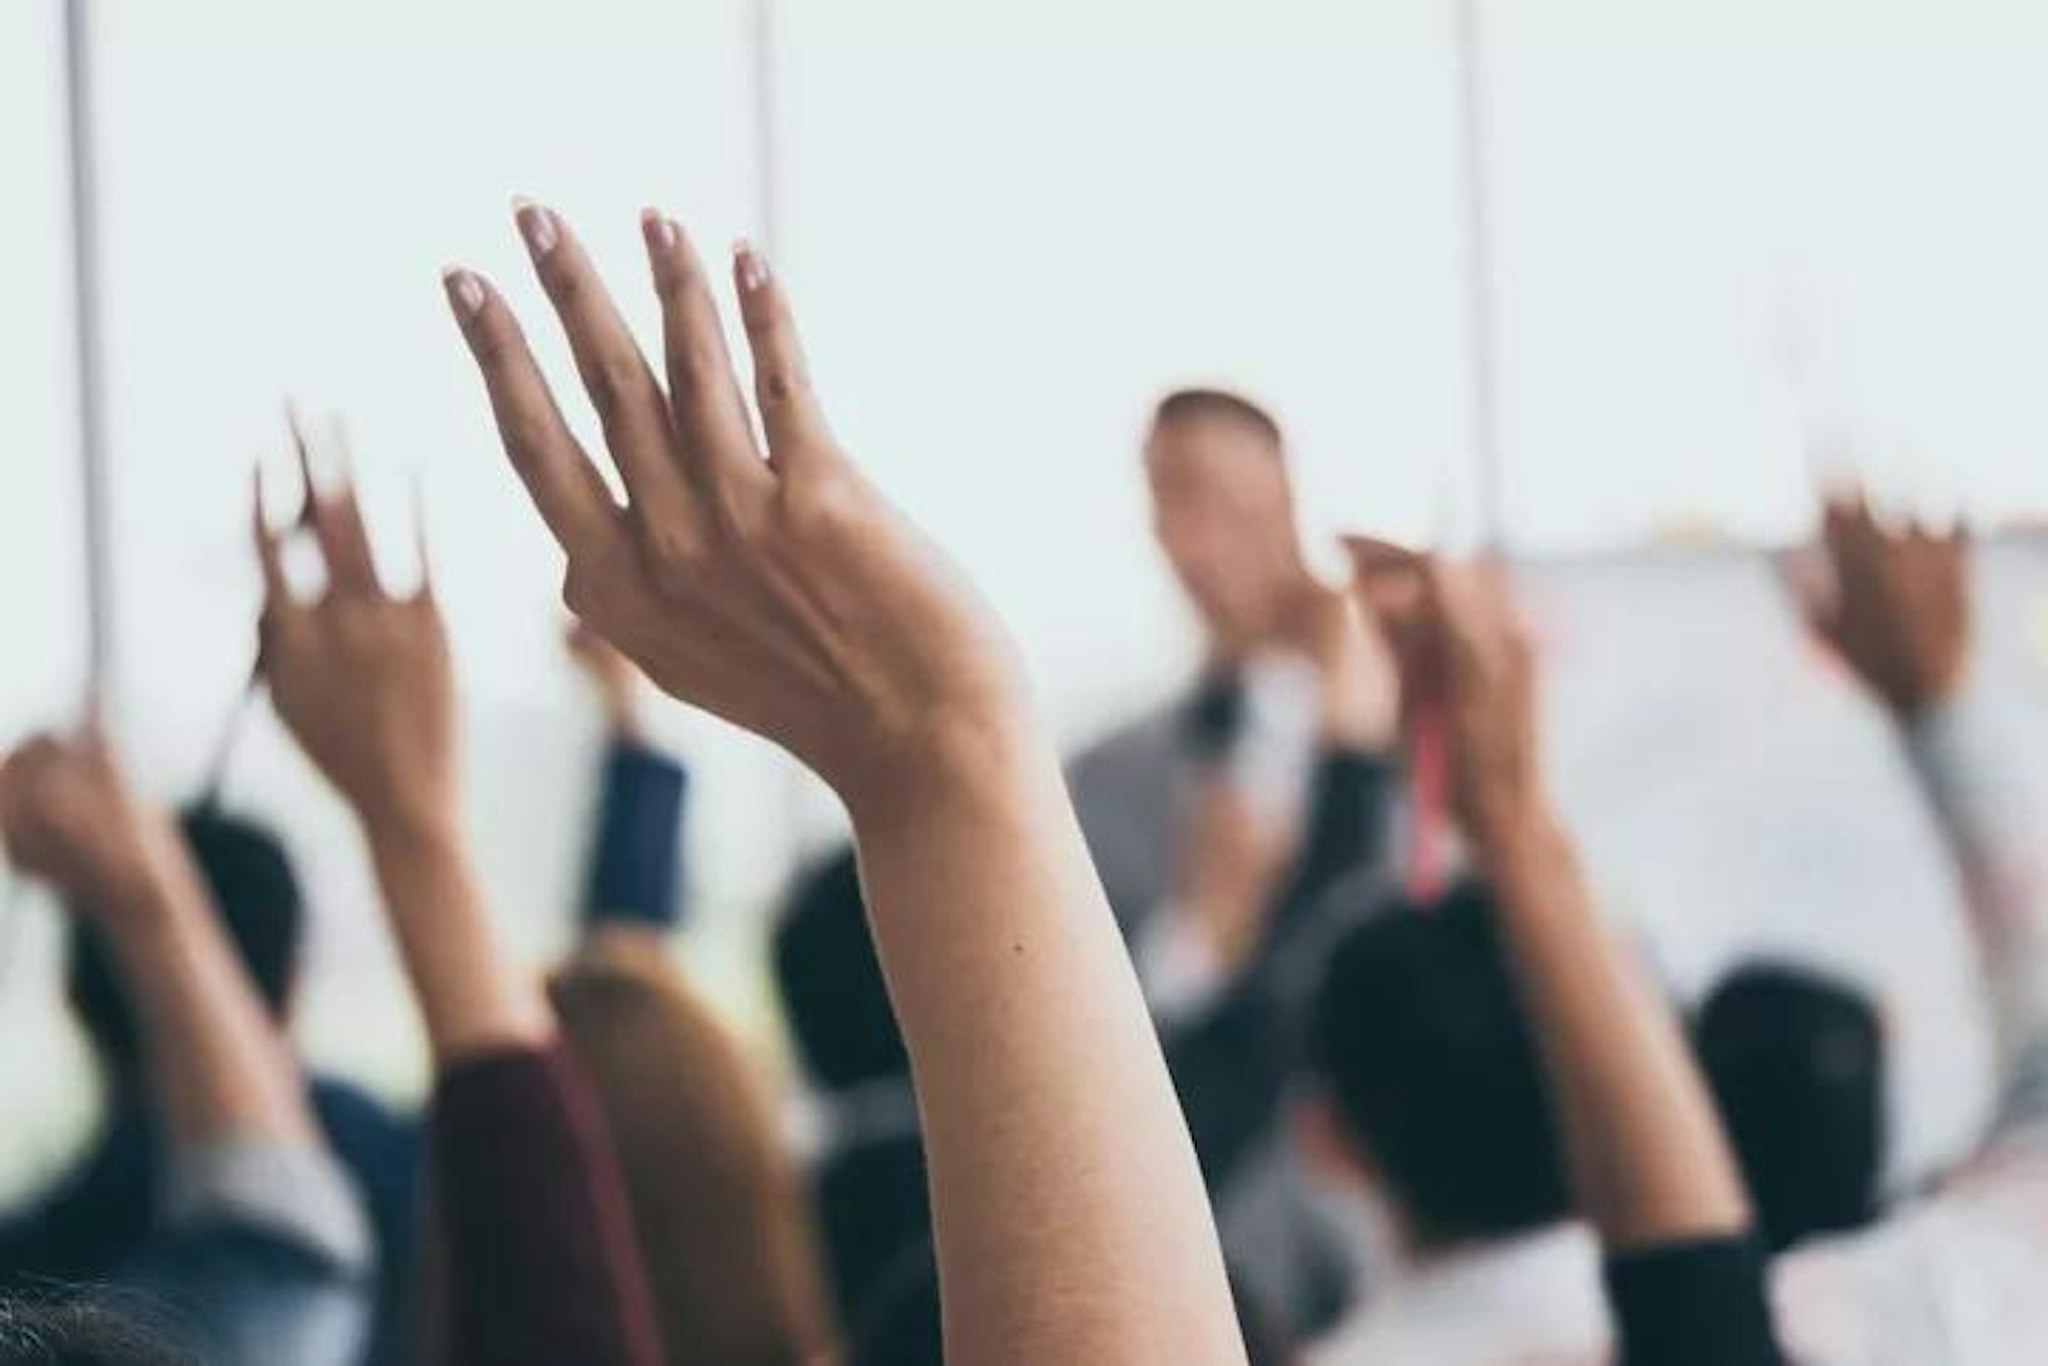 Members raise their hands during school board meeting 